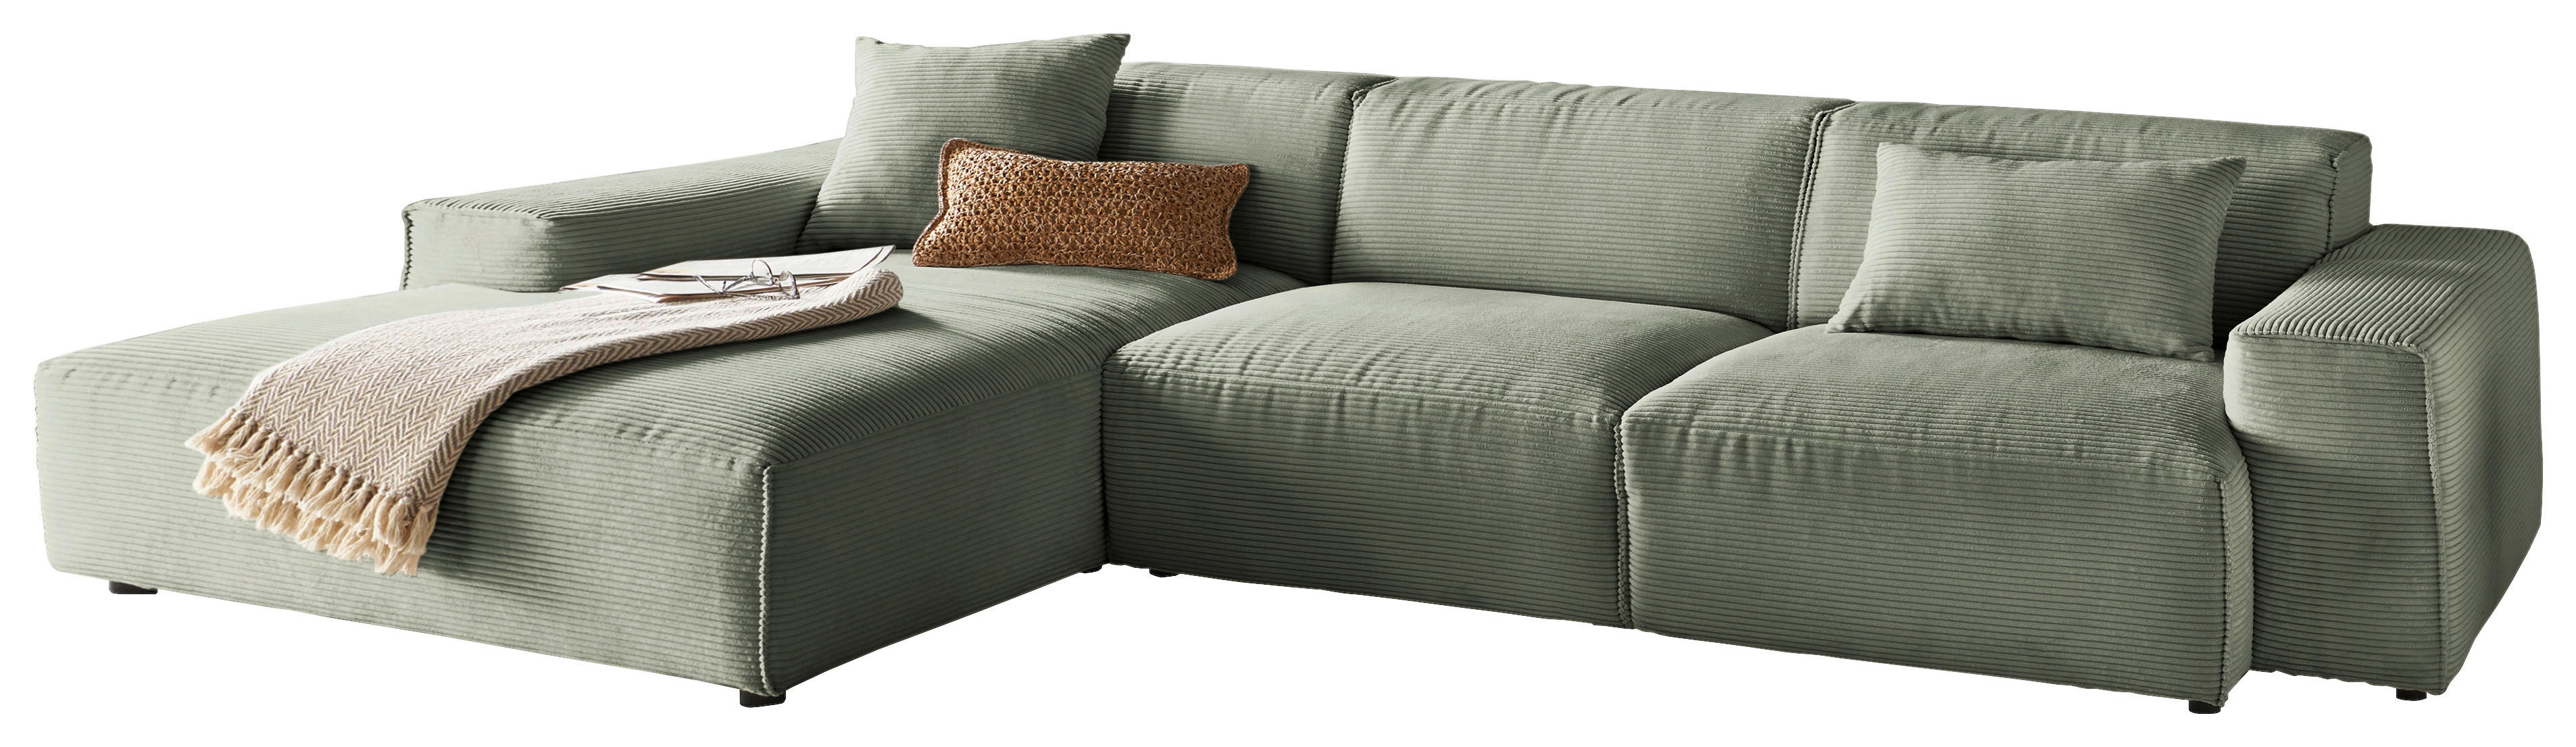 ECKSOFA in Cord Grün  - Schwarz/Grün, Design, Kunststoff/Textil (189/299cm) - Pure Home Lifestyle